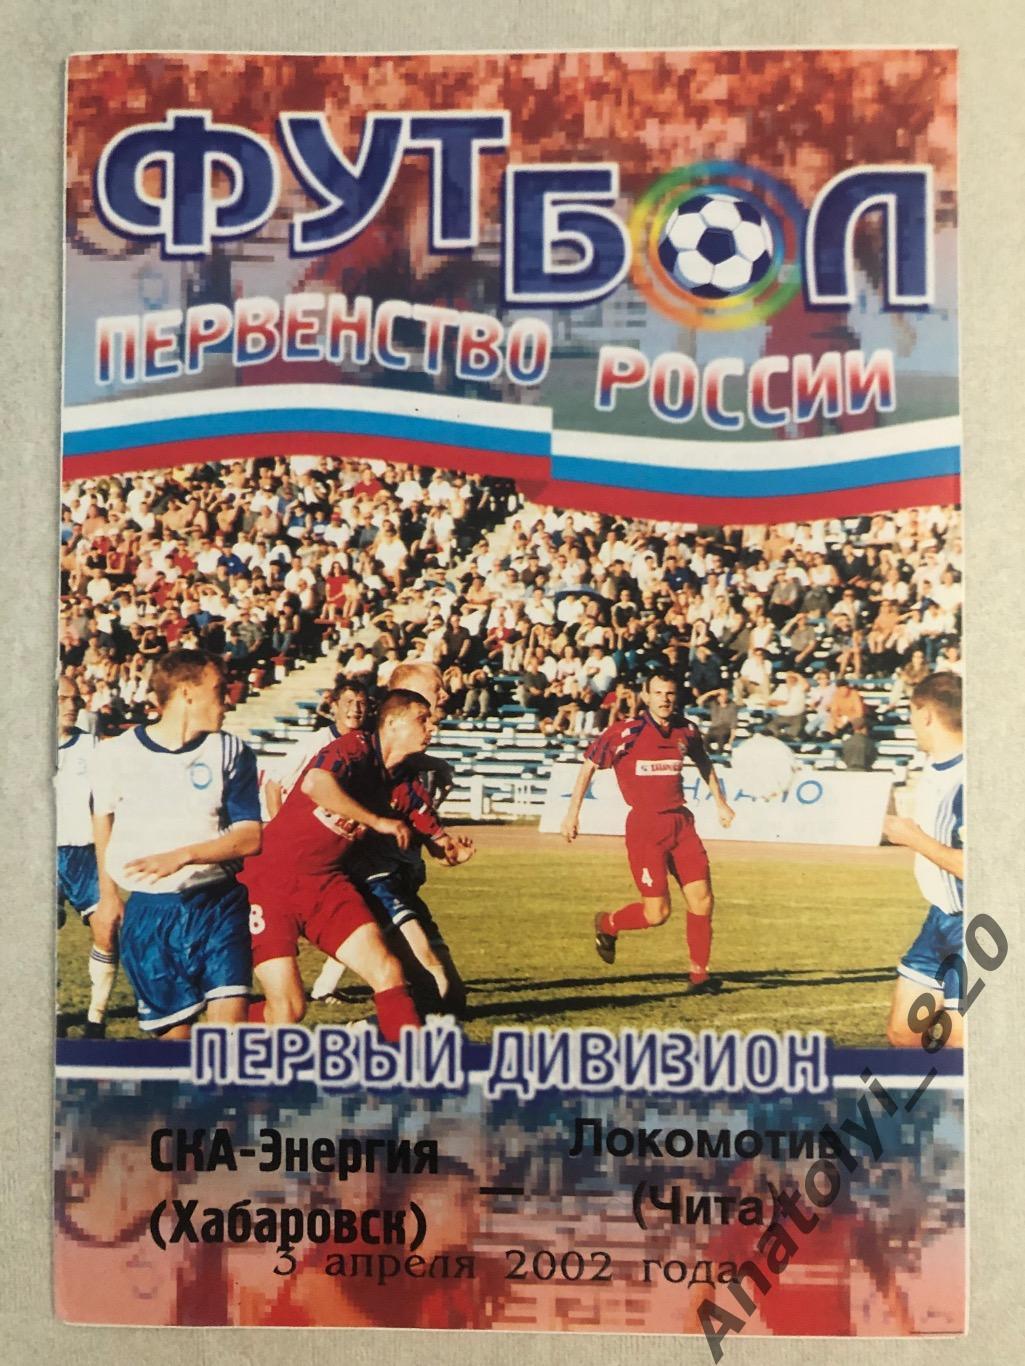 СКА-Энергия Хабаровск - Локомотив Чита 2002 год